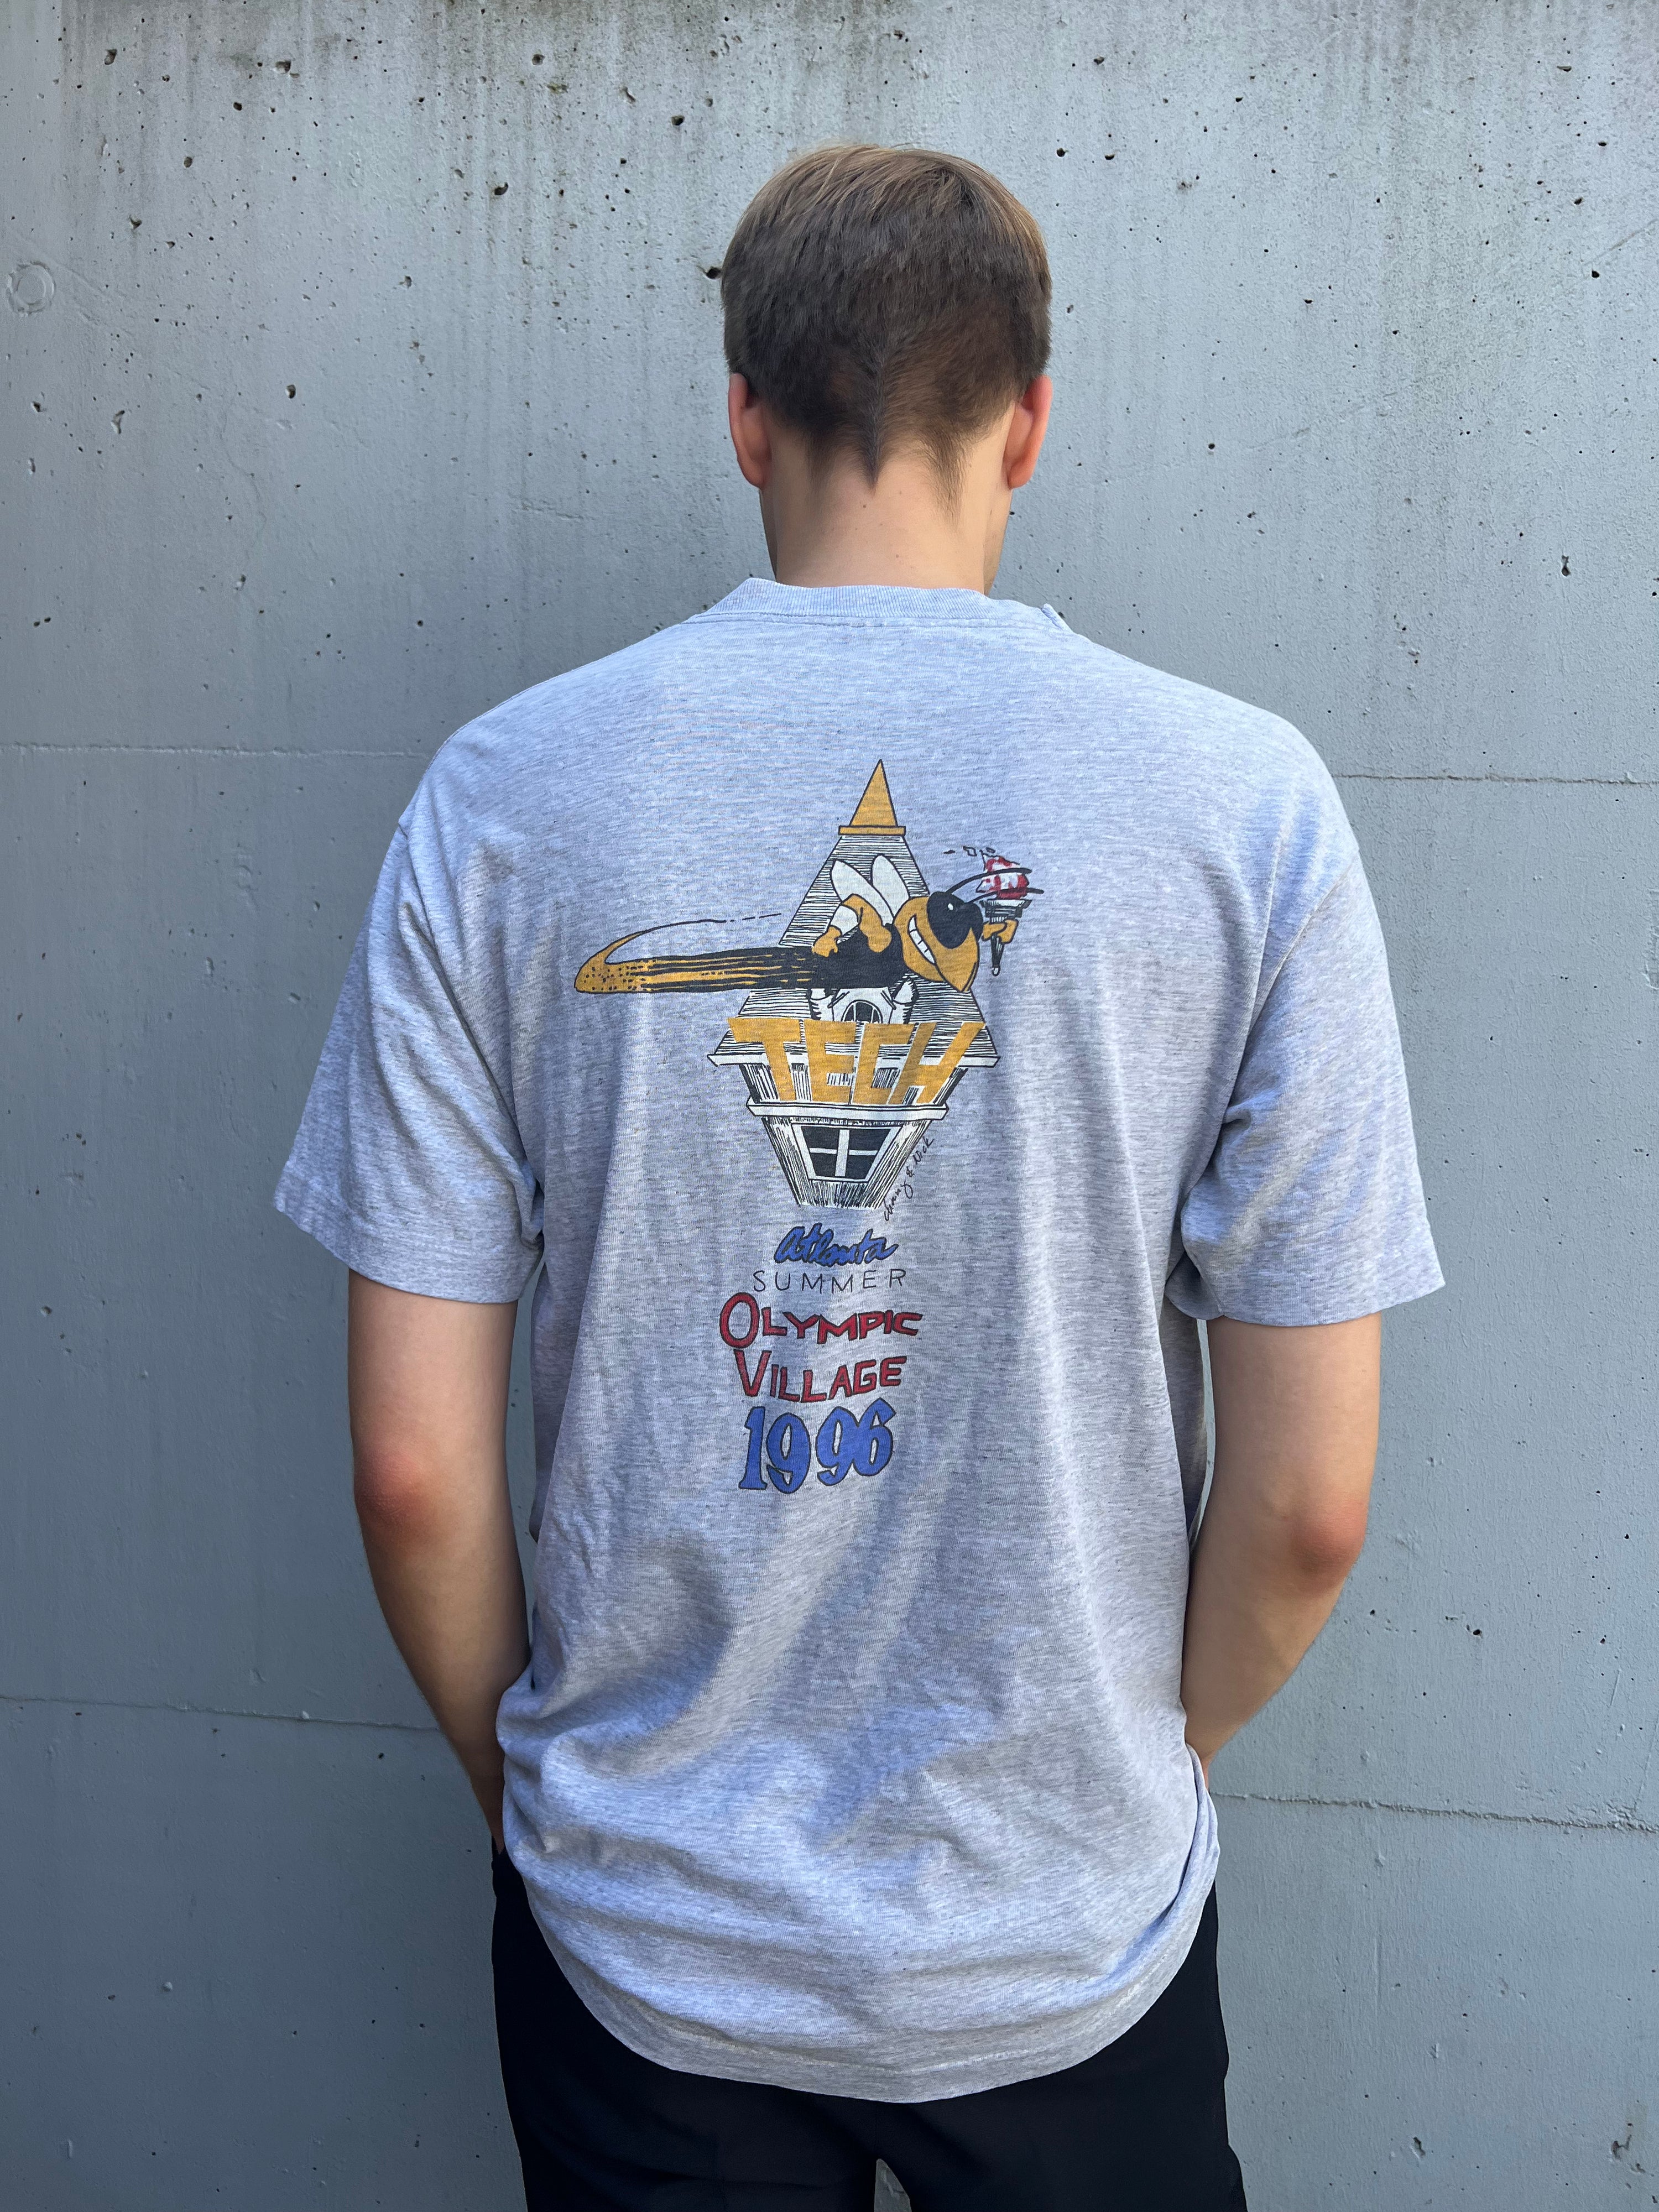 Vintage 1996 Atlanta Olympics T-Shirt (XL)